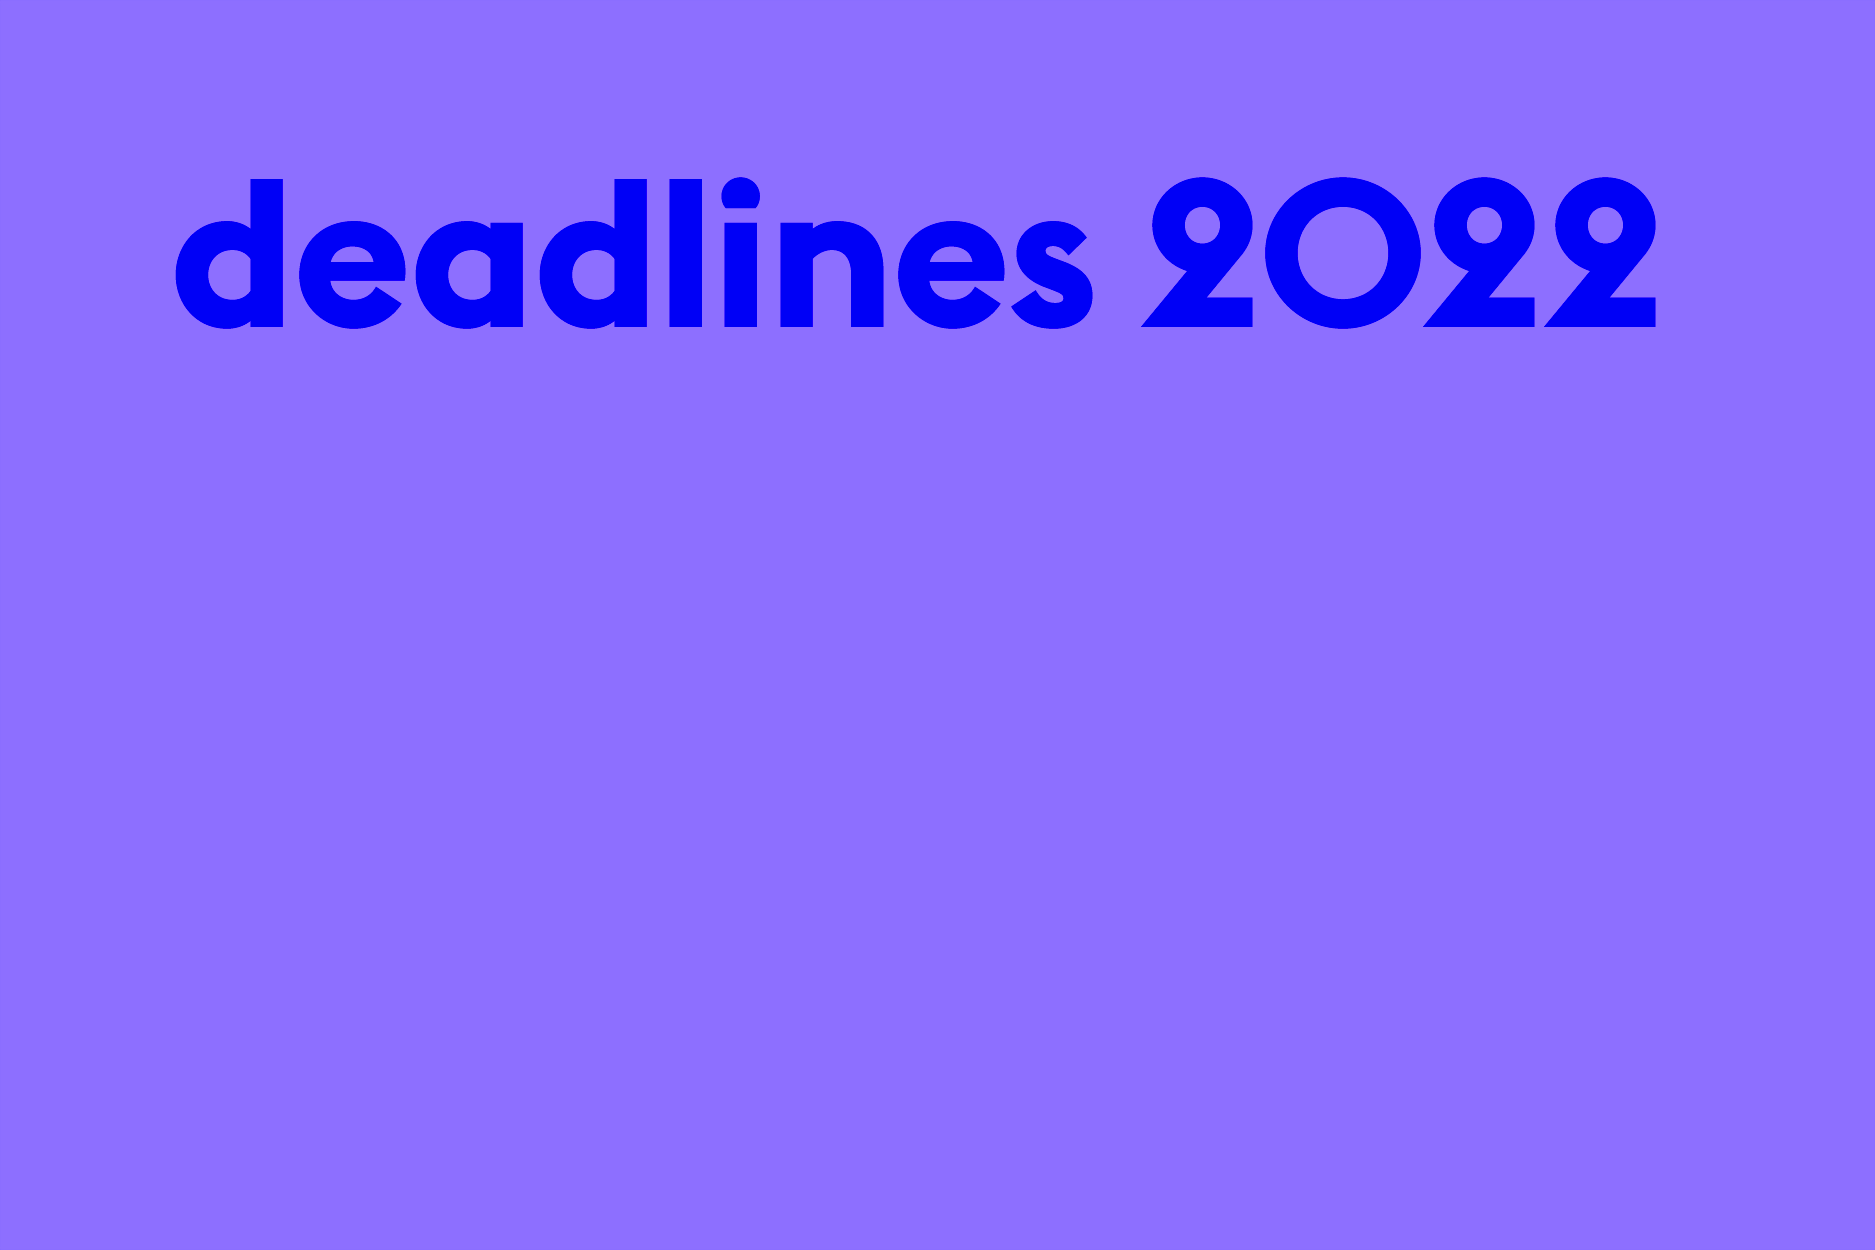 deadlines2022.png